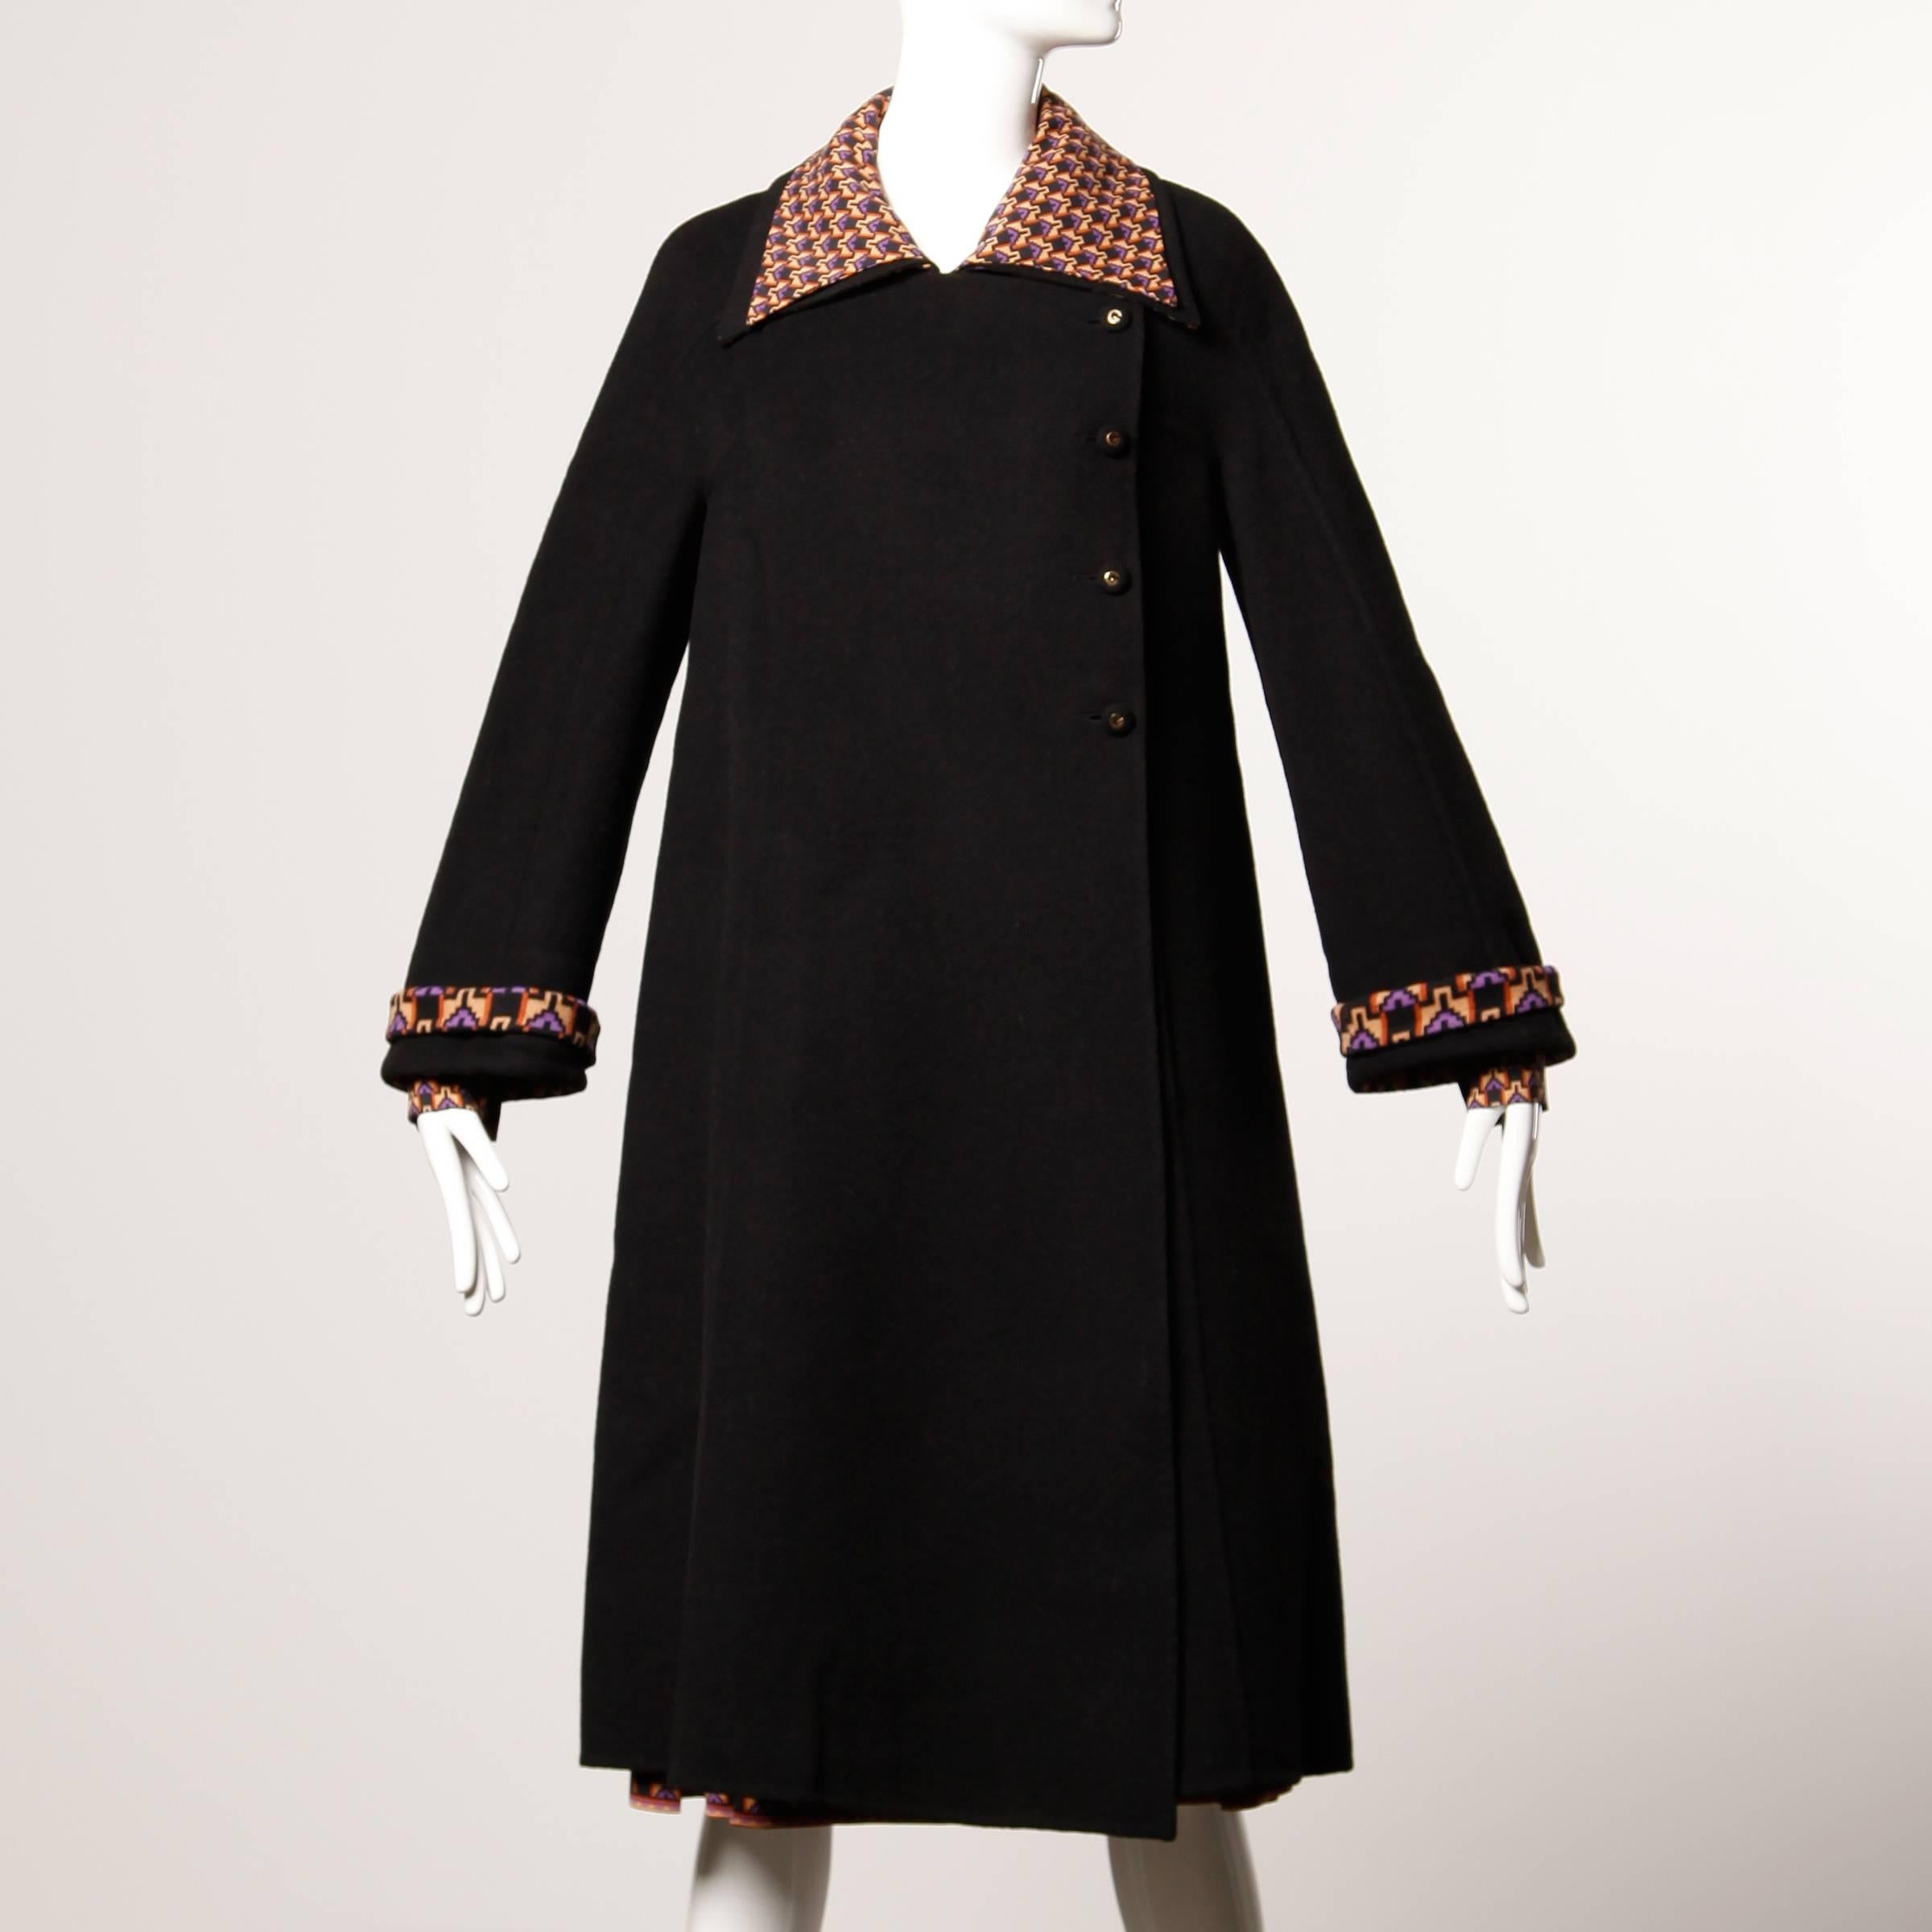 Black Museum Quality Gucci Vintage 1970s Reversible Wool Coat + Dress Ensemble